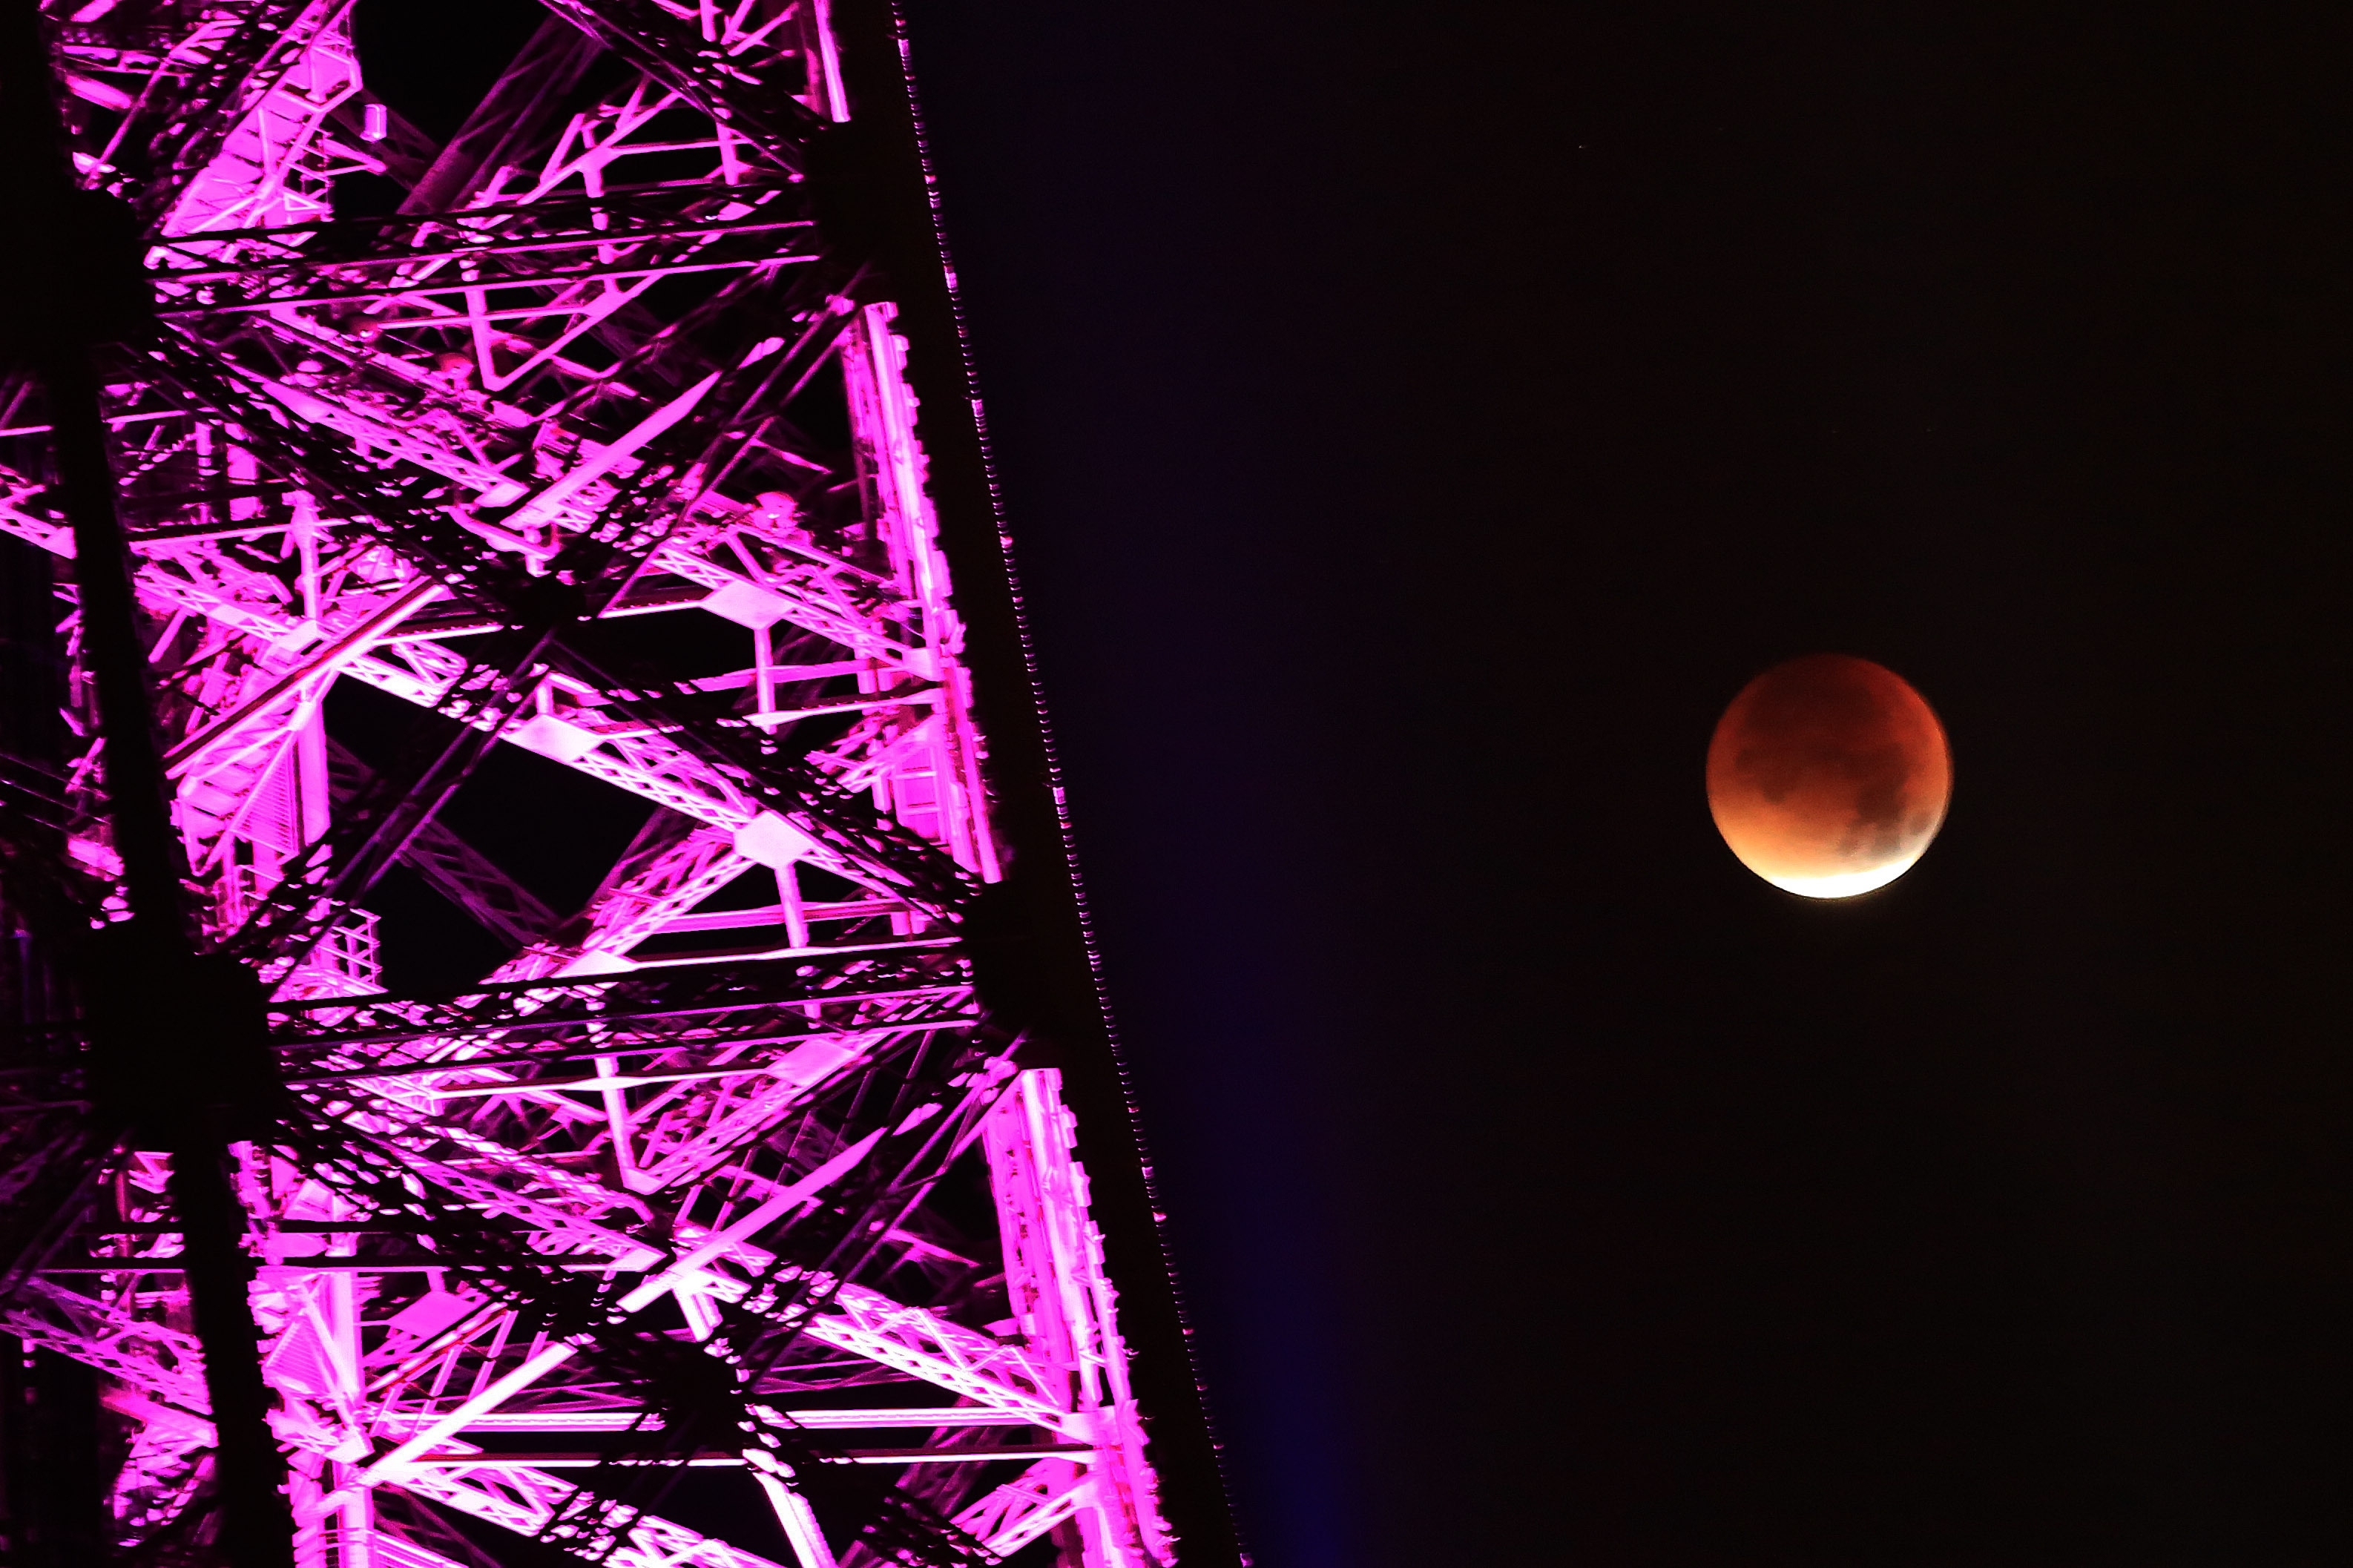 Seen near the Eiffel Tower, during a total lunar eclipse, in Paris